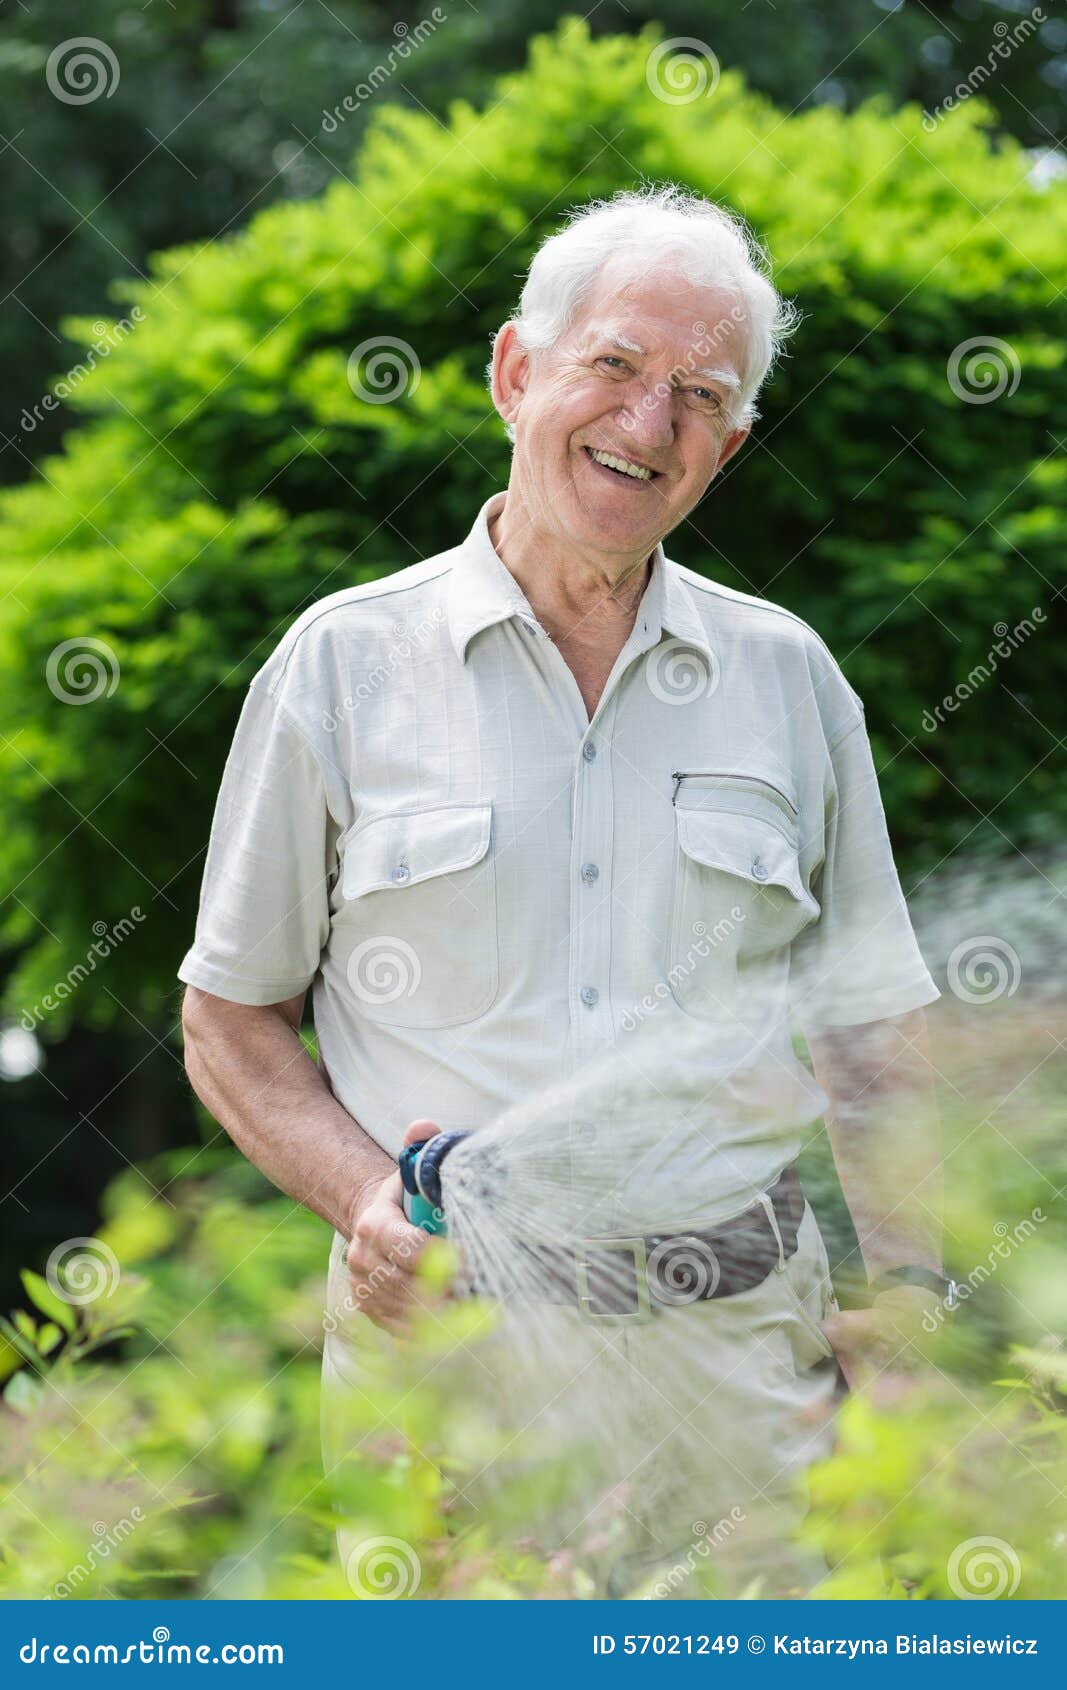 elder gardener with hosepipe